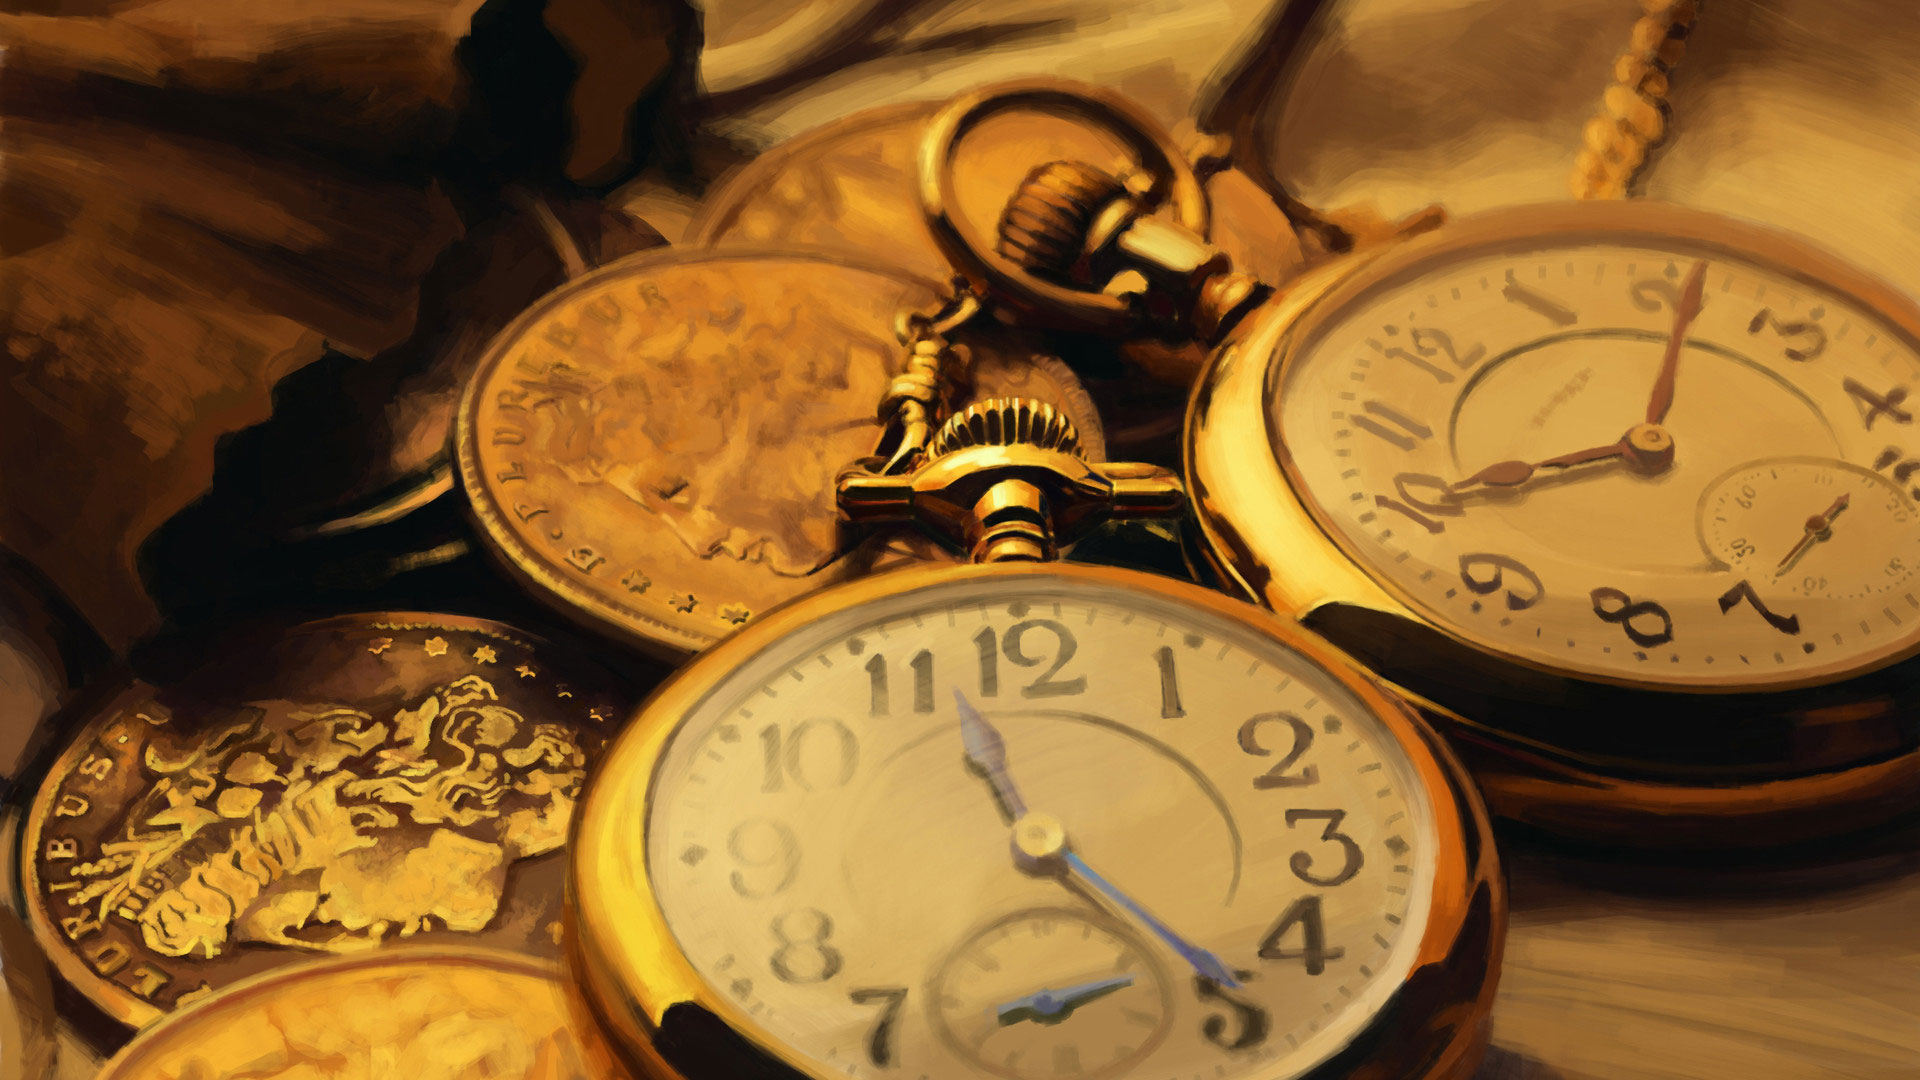 golden clock live wallpaper,pocket watch,watch,still life photography,antique,clock